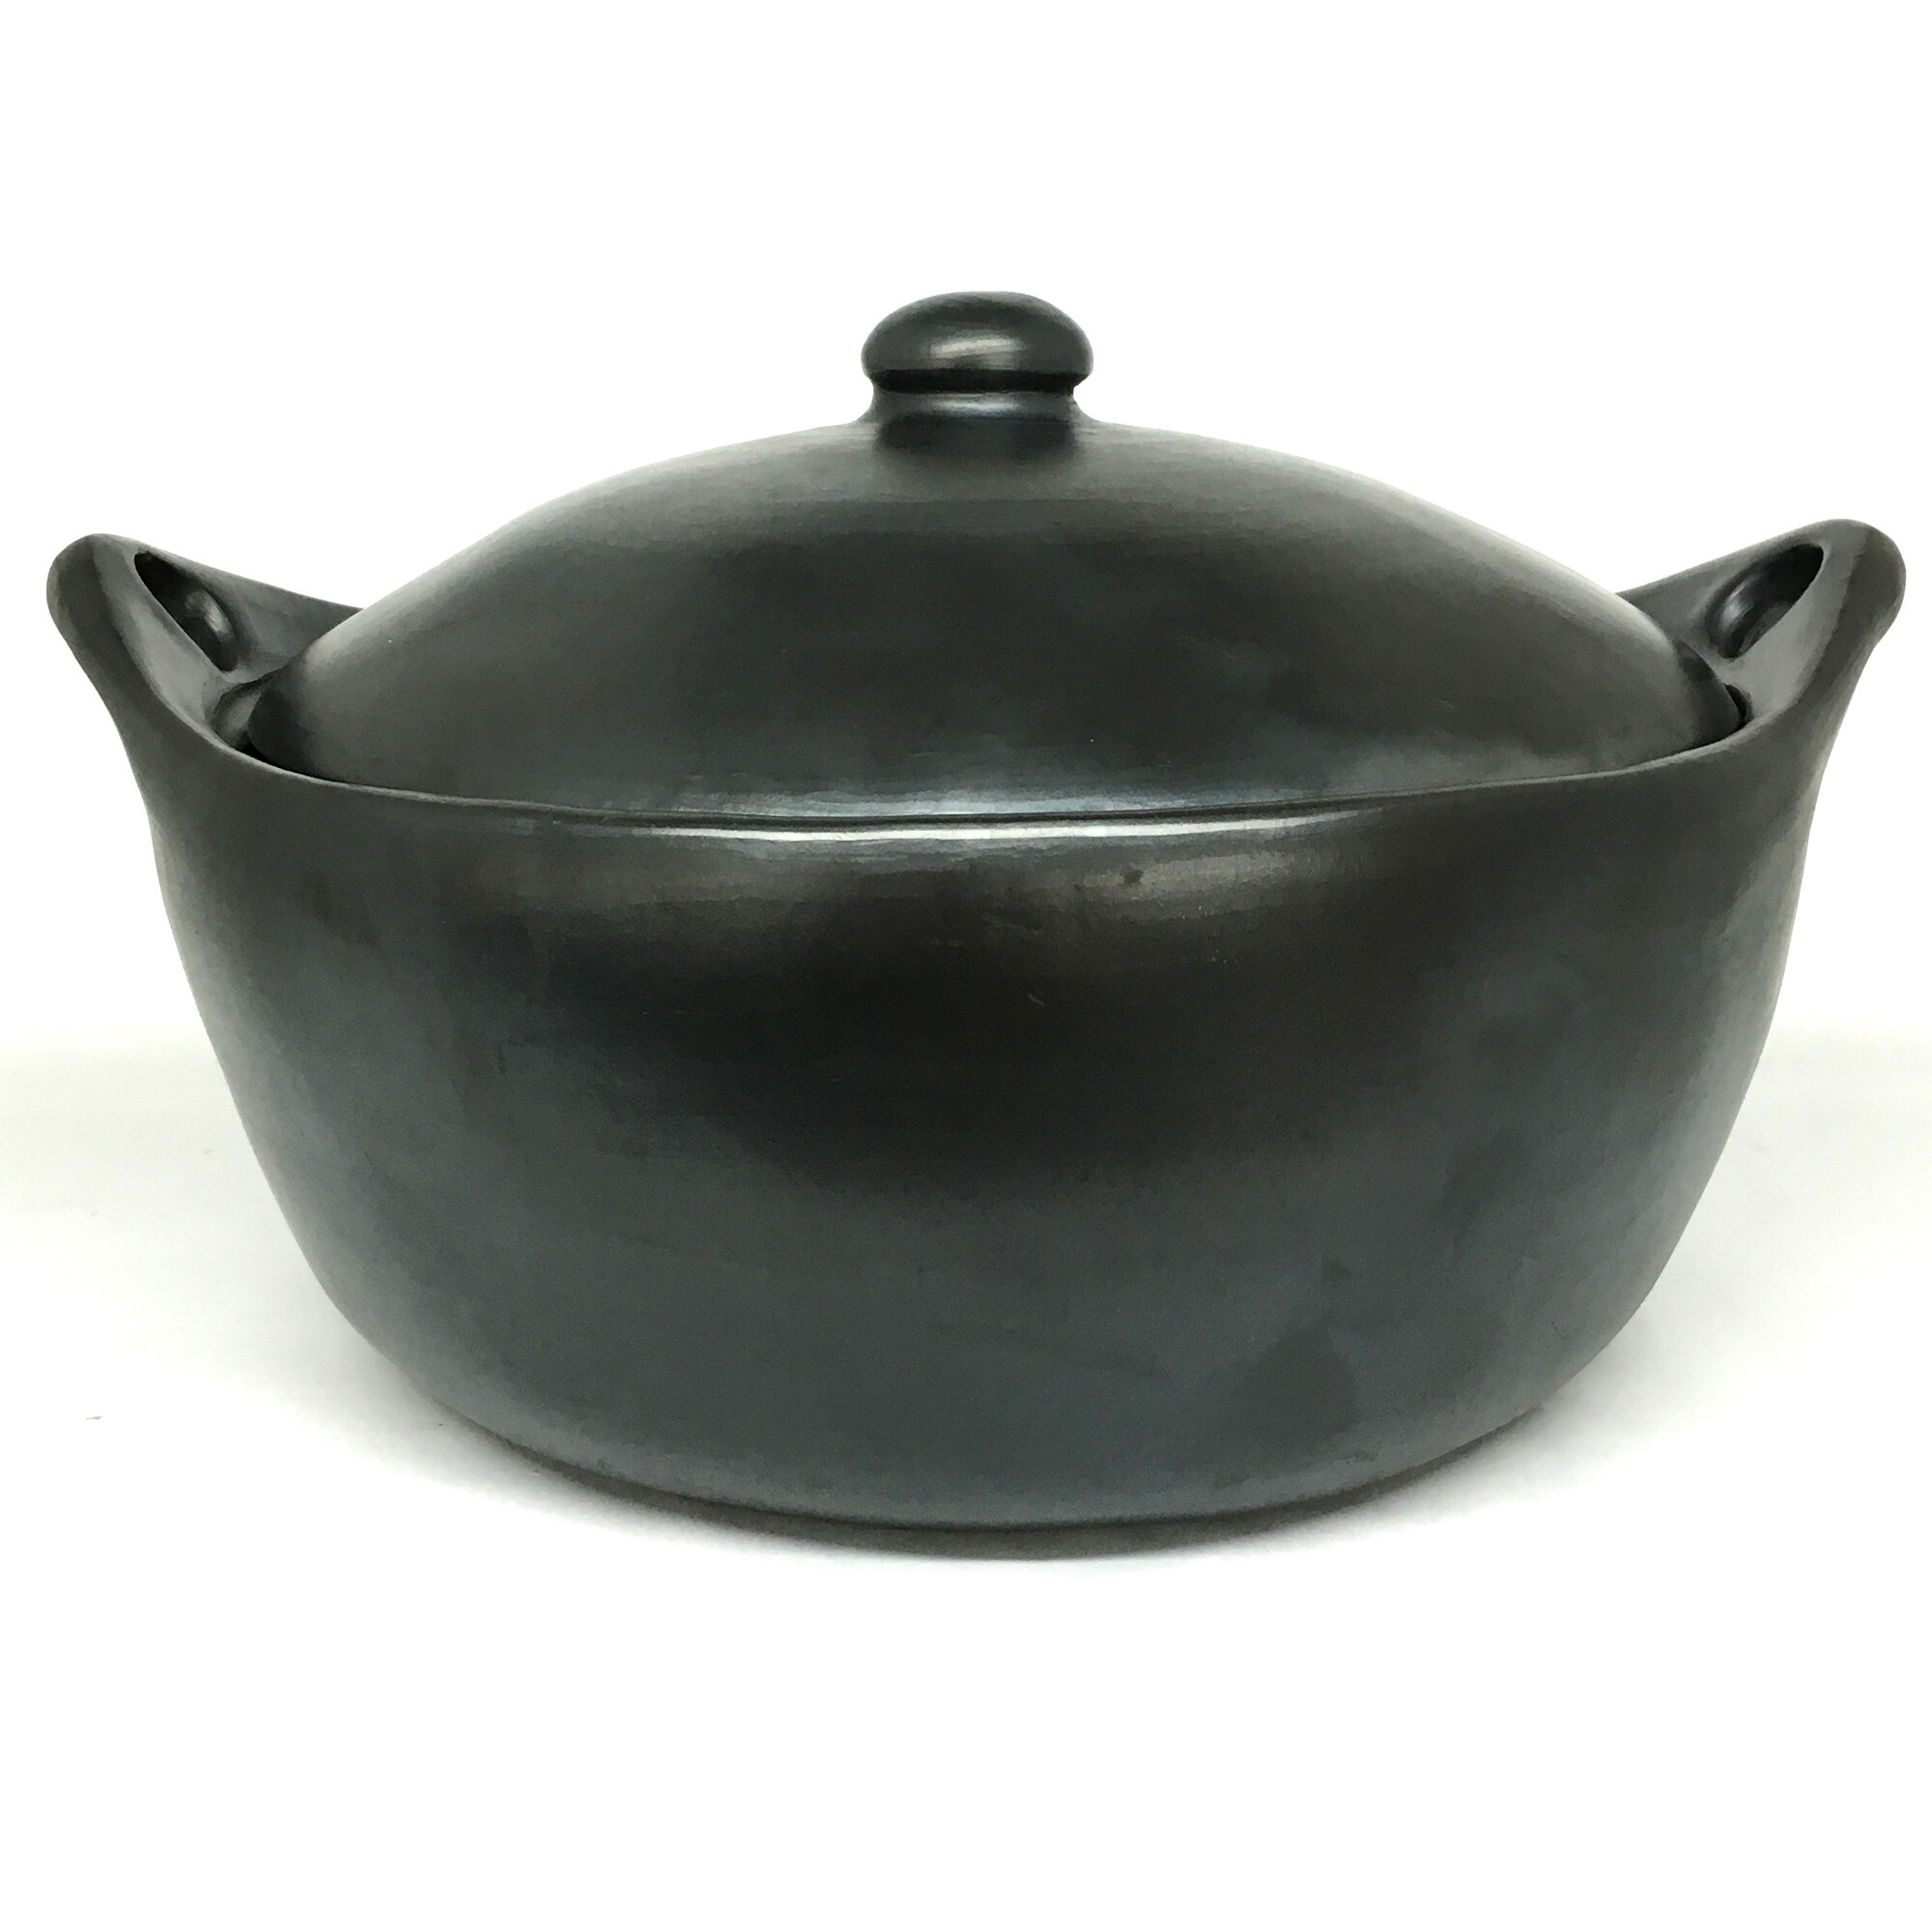 Black Clay, La Chamba Round Saute Pan - Large